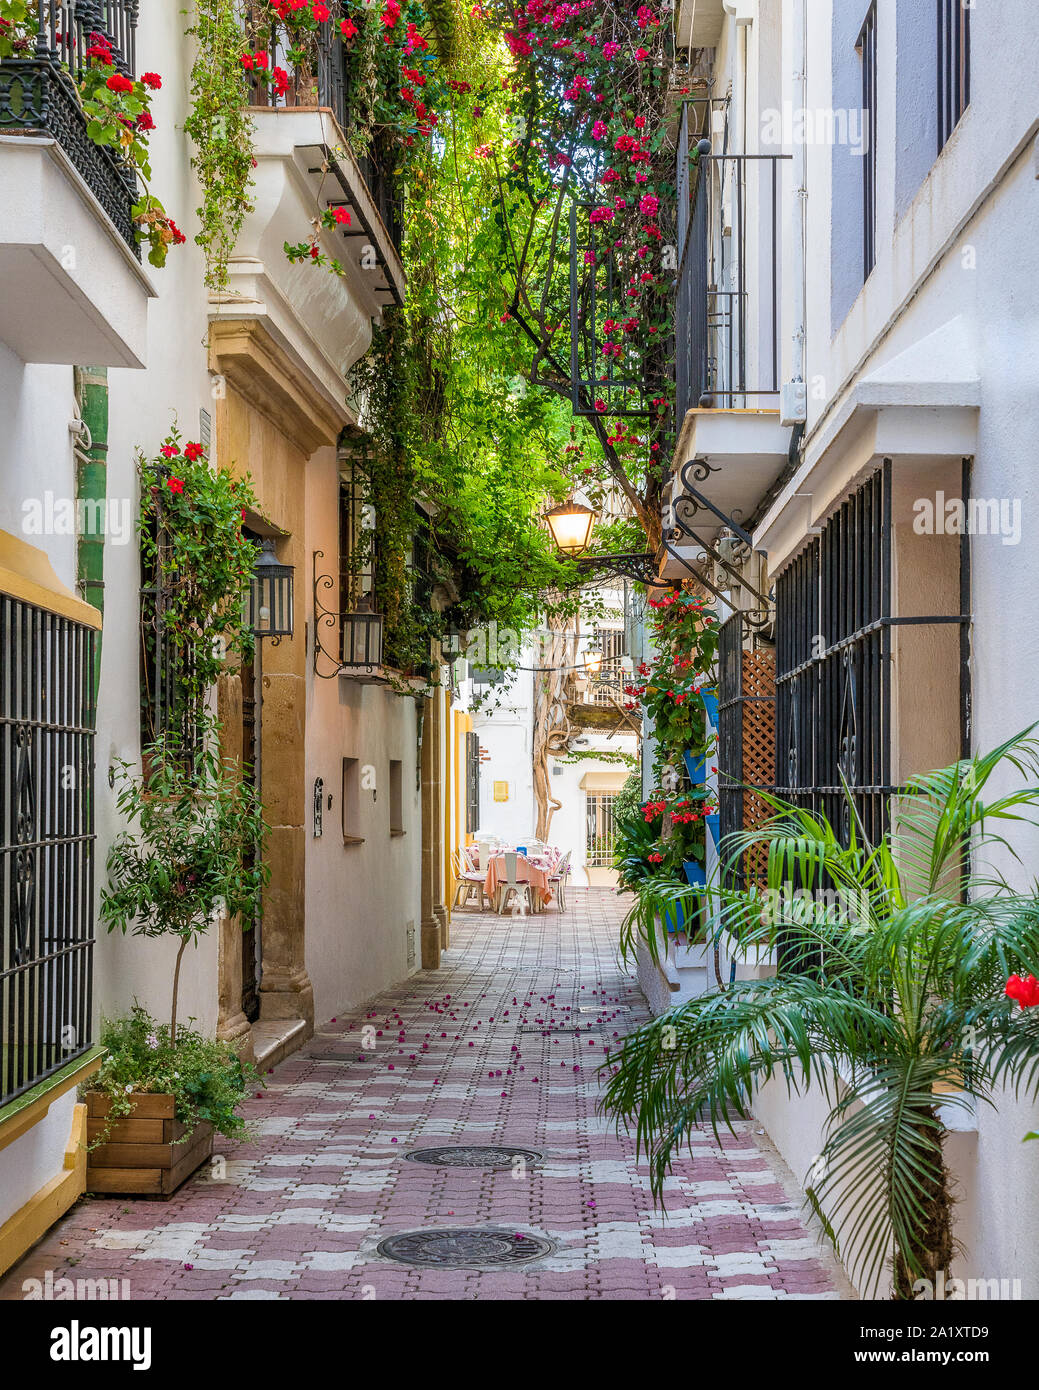 Une rue étroite et pittoresque vieille ville de Marbella, province de Malaga, Espagne. Banque D'Images